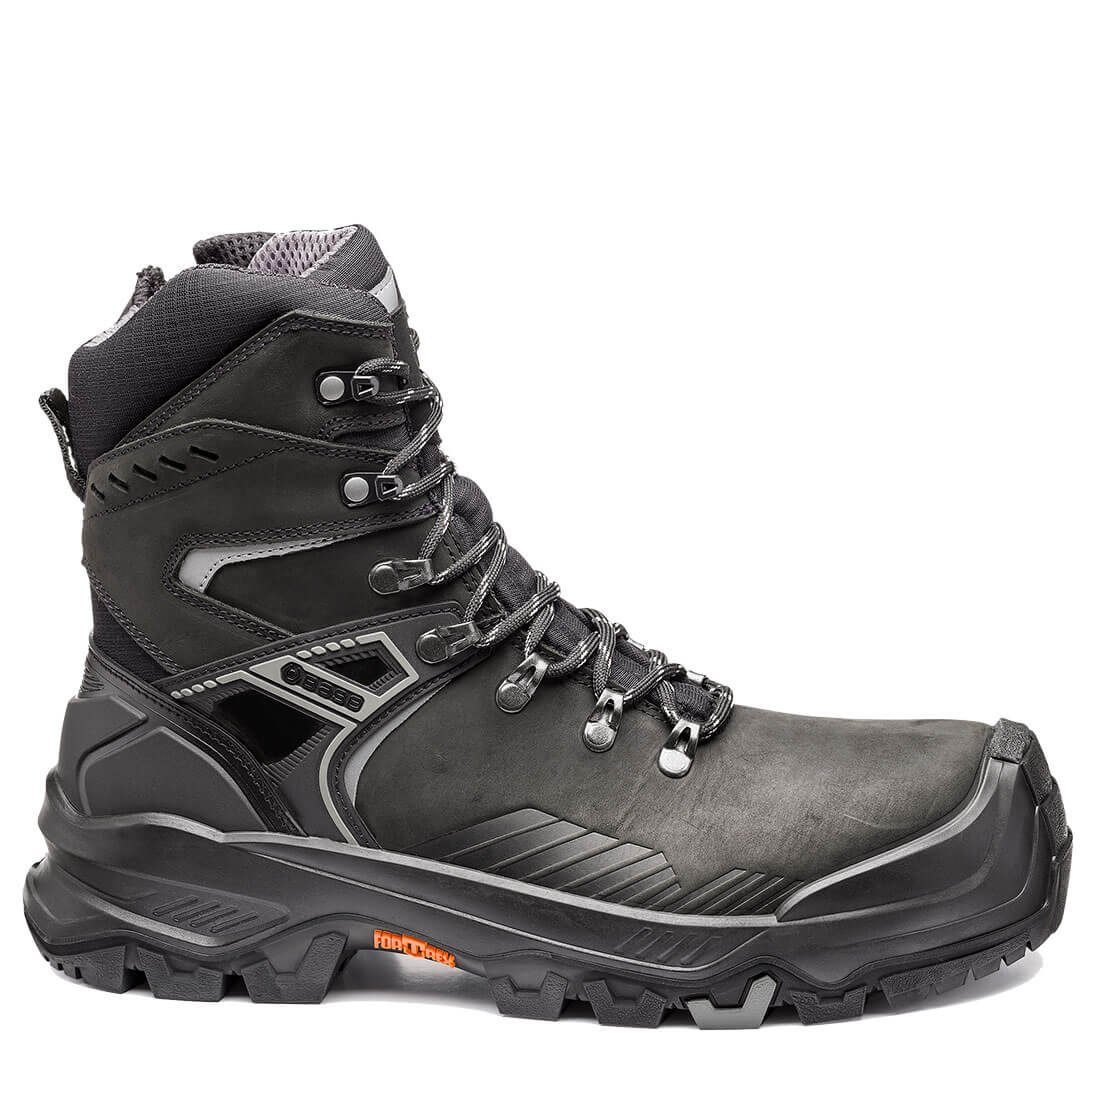 Base Footwear T-MASSIVE B1611 Wärmeisolierend, Durchtrittsicher, - Sicherheitsschuh Allroundshoes Kälteisoliert Wasserabweisend, Rutchhemmend, Sicherheitsschuhe